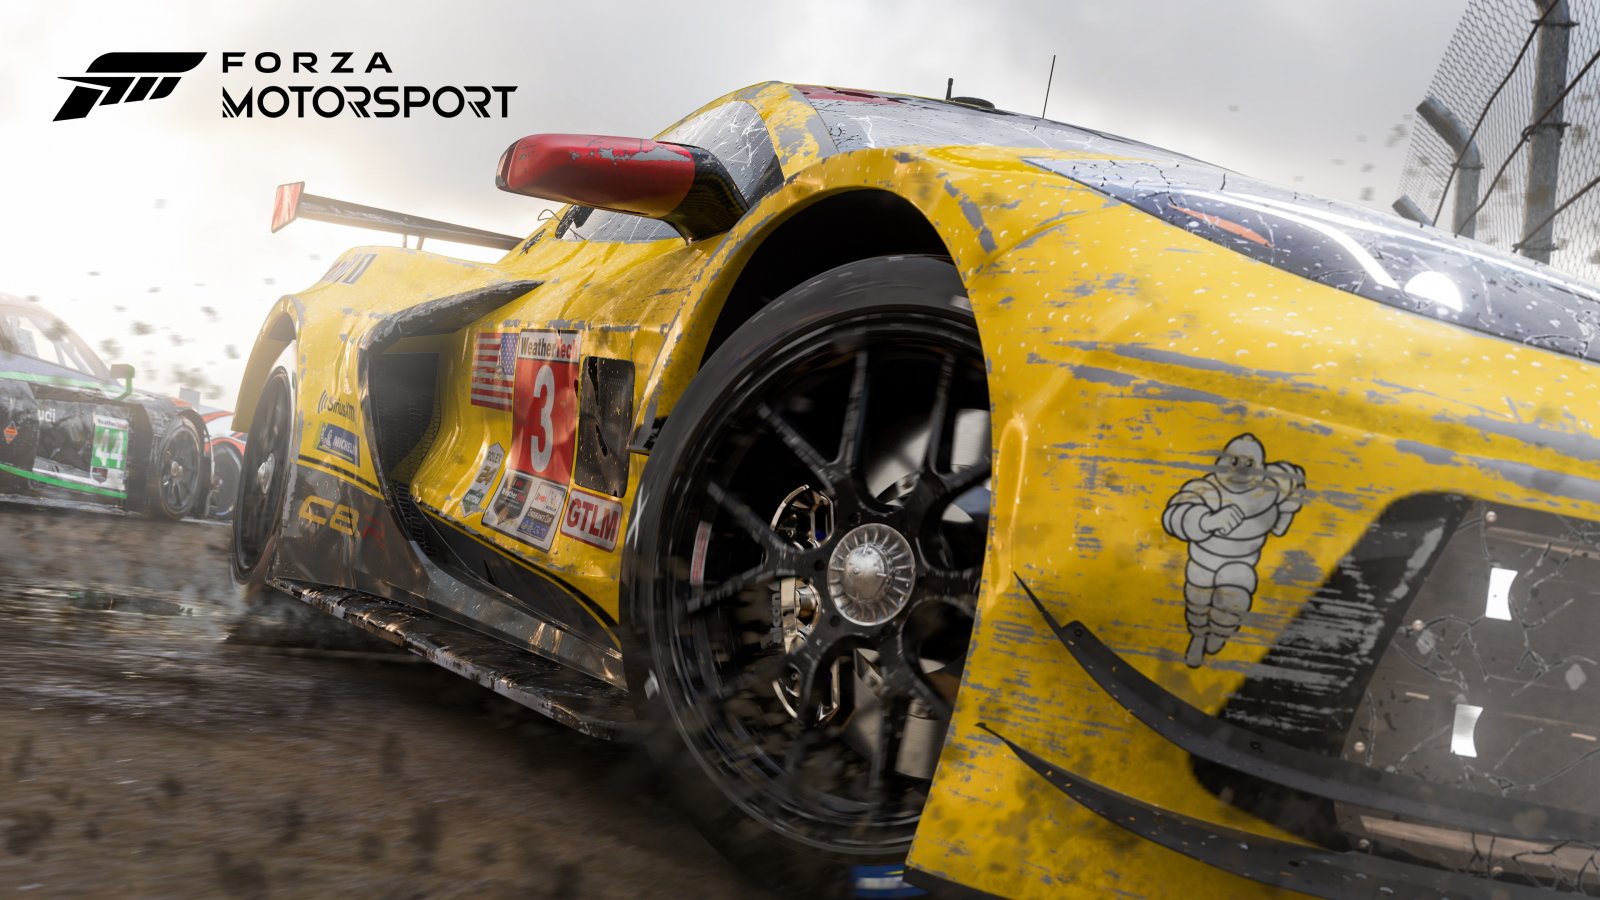 Forza Motorsport includerà 20 scenari al lancio, ecco alcune delle location presenti